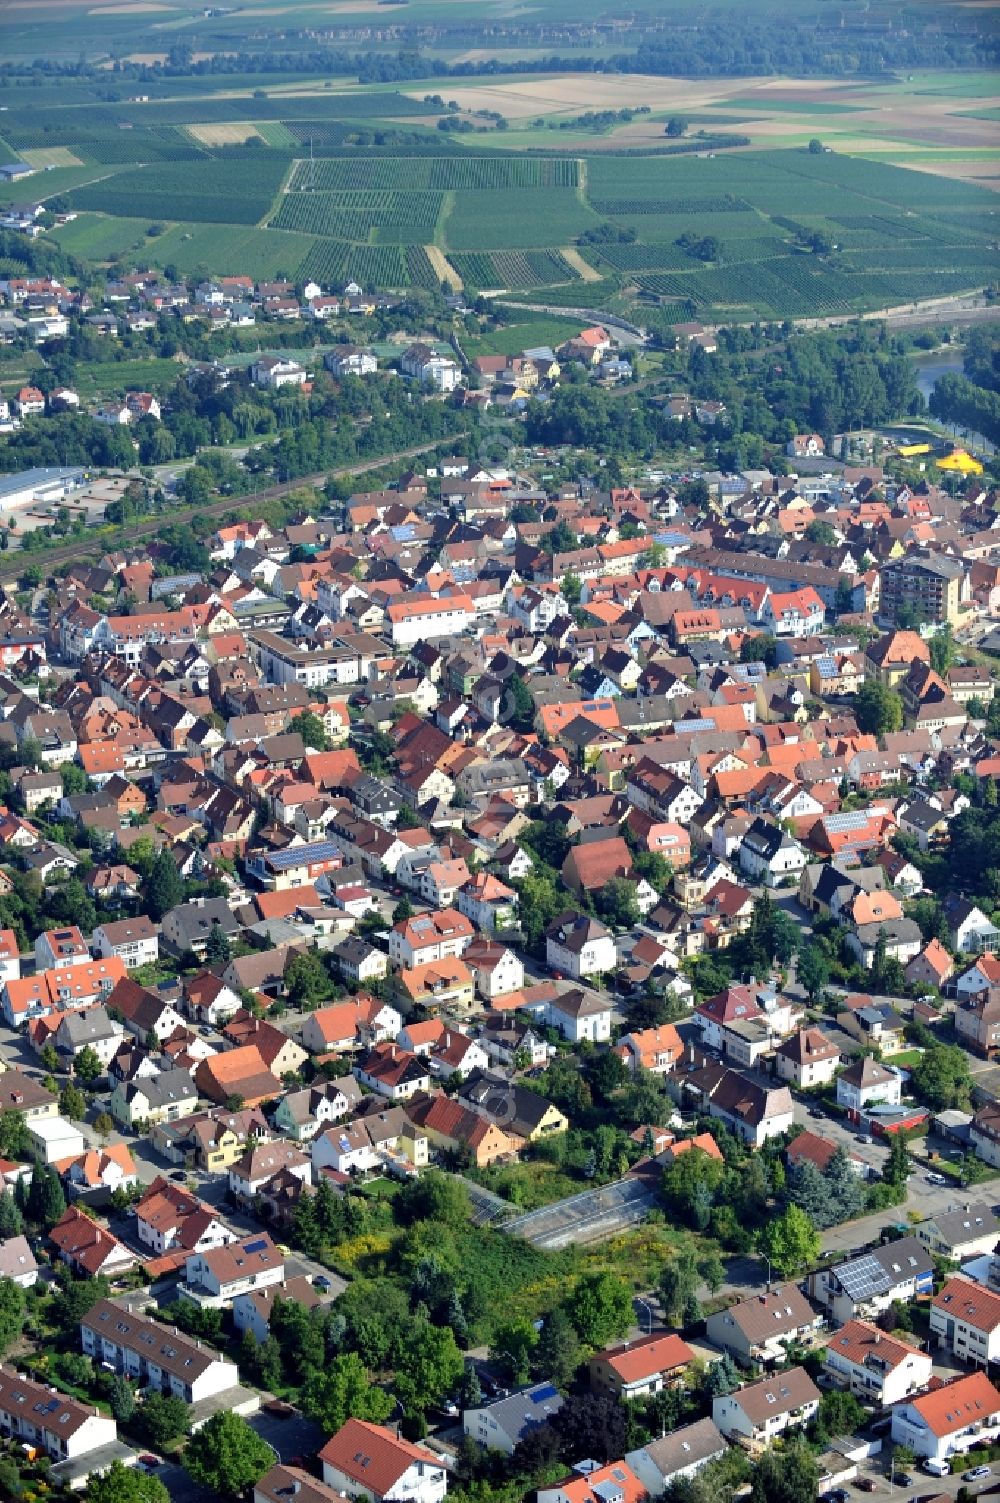 Lauffen am Neckar from the bird's eye view: City view of Lauffen am Neckar in Baden-Wuerttemberg